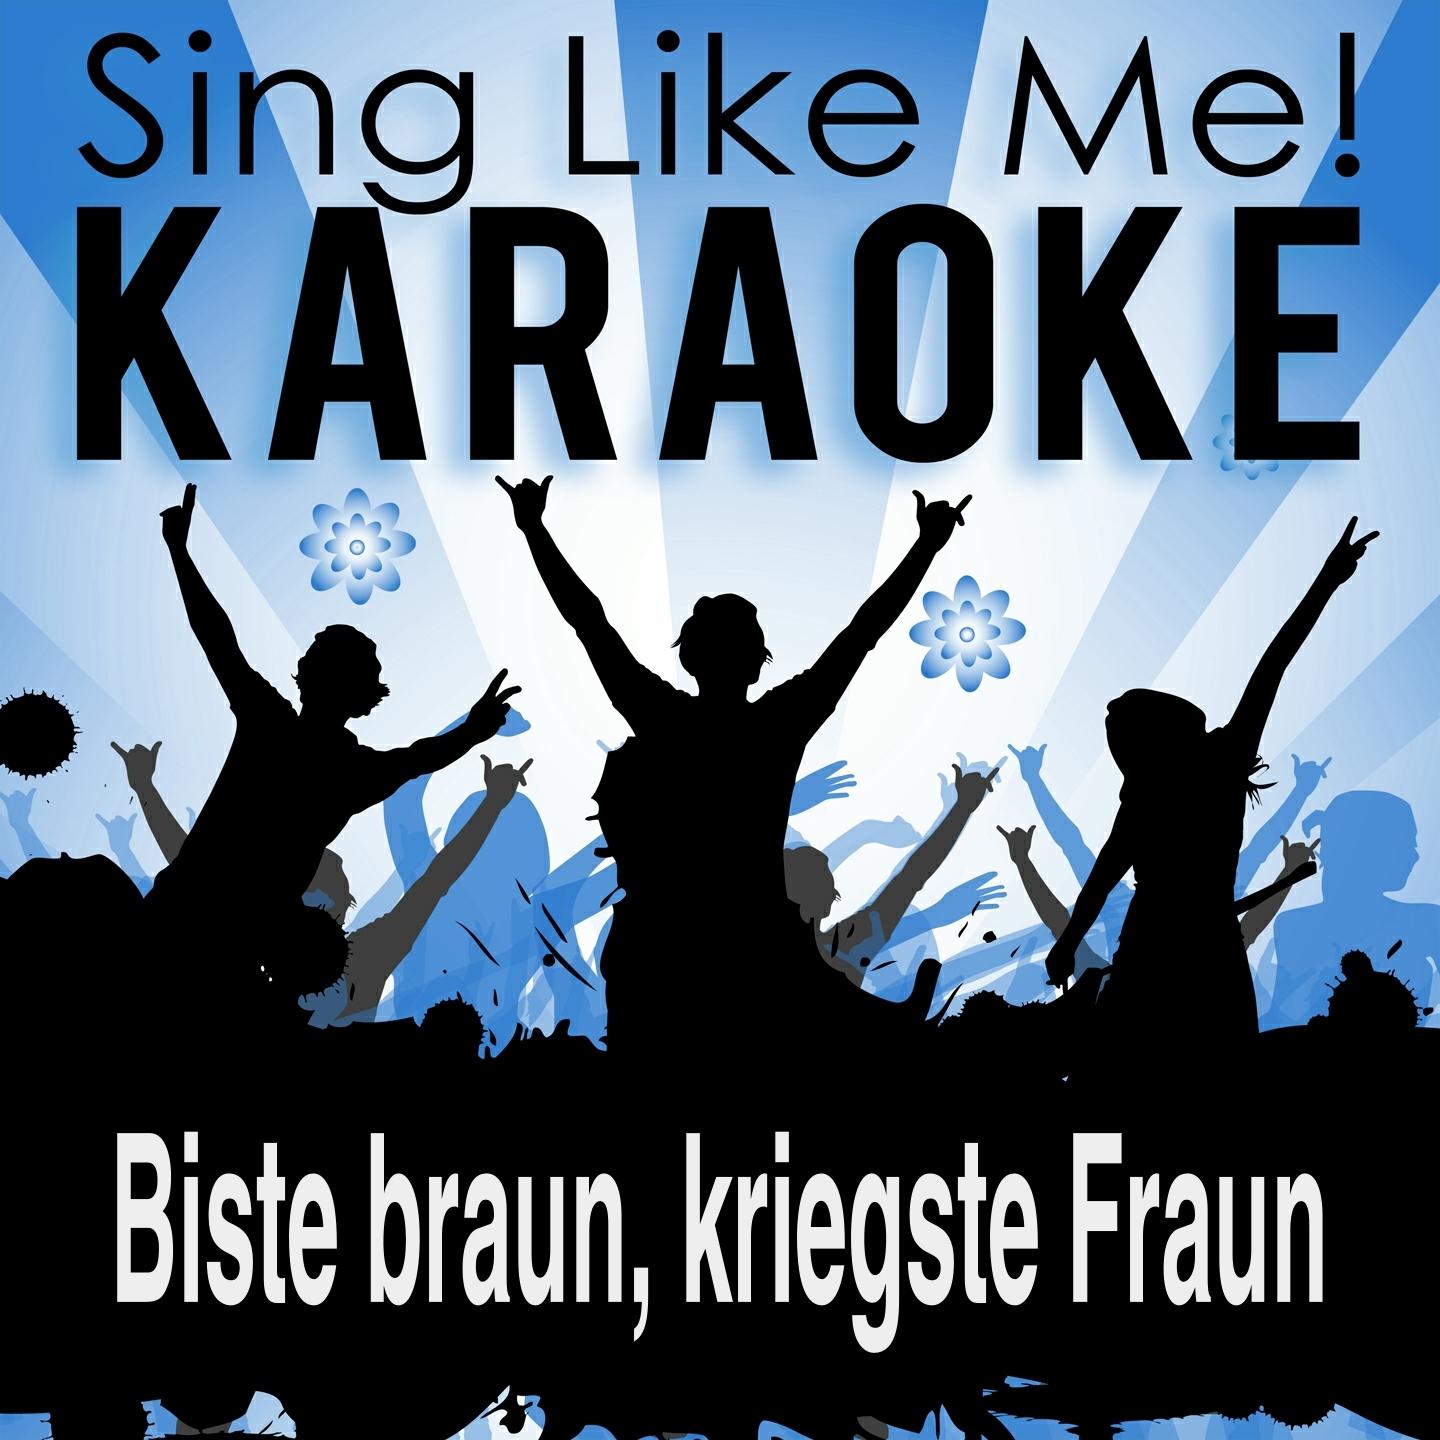 Biste braun, kriegste Fraun (2015 Edit) (Karaoke Version)